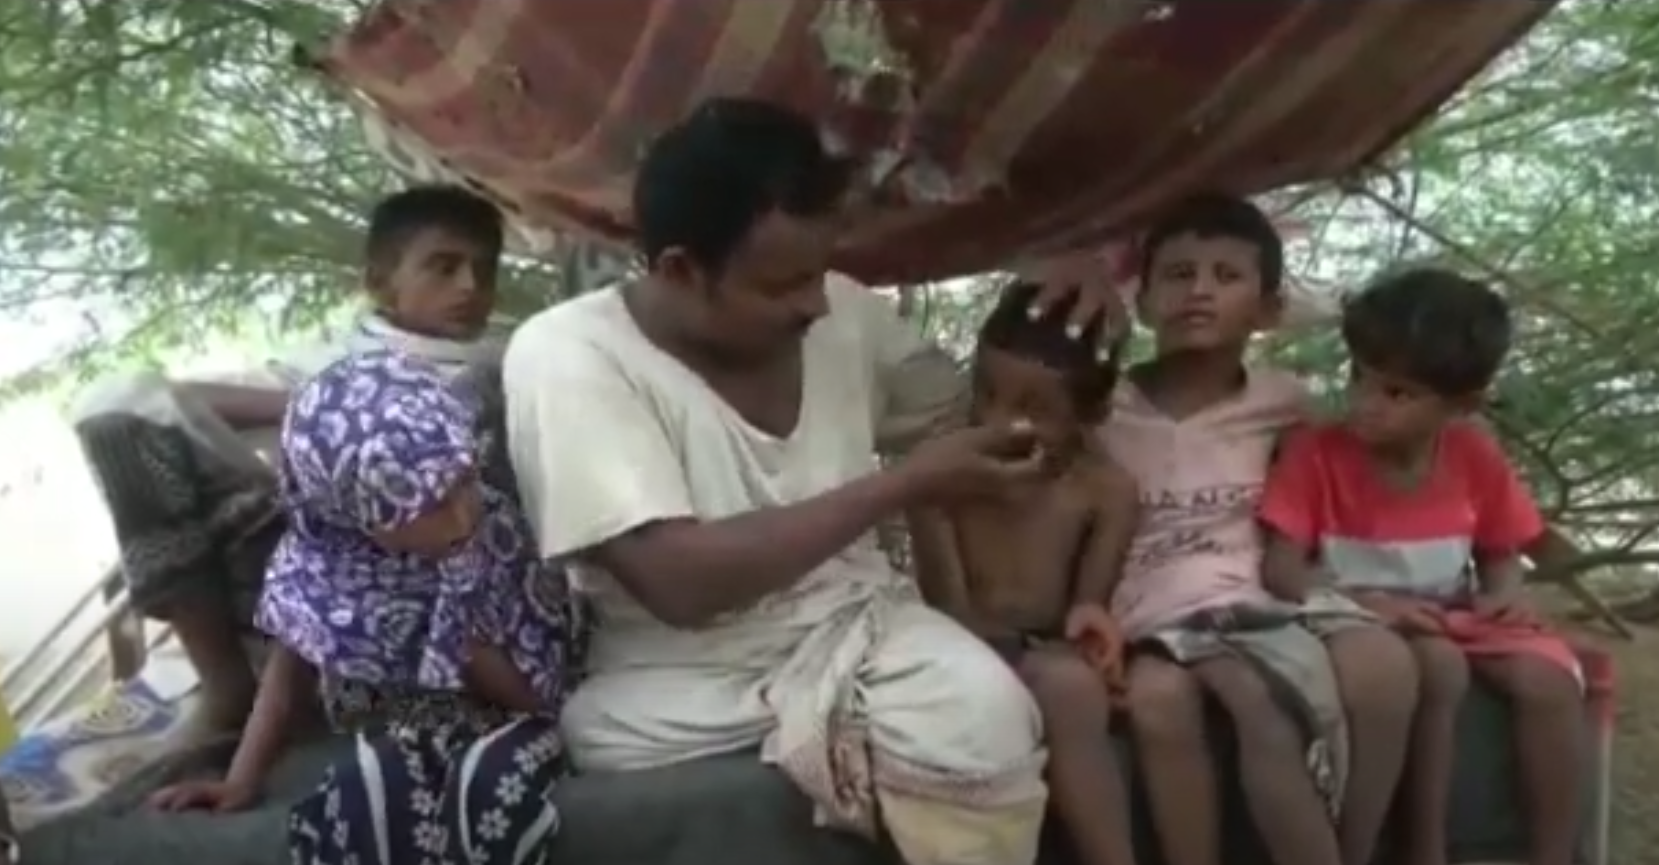 حسن يشير إلى ابنه الذي فقد الرؤية في إحدى عينيه بسبب اللغم الحوثي